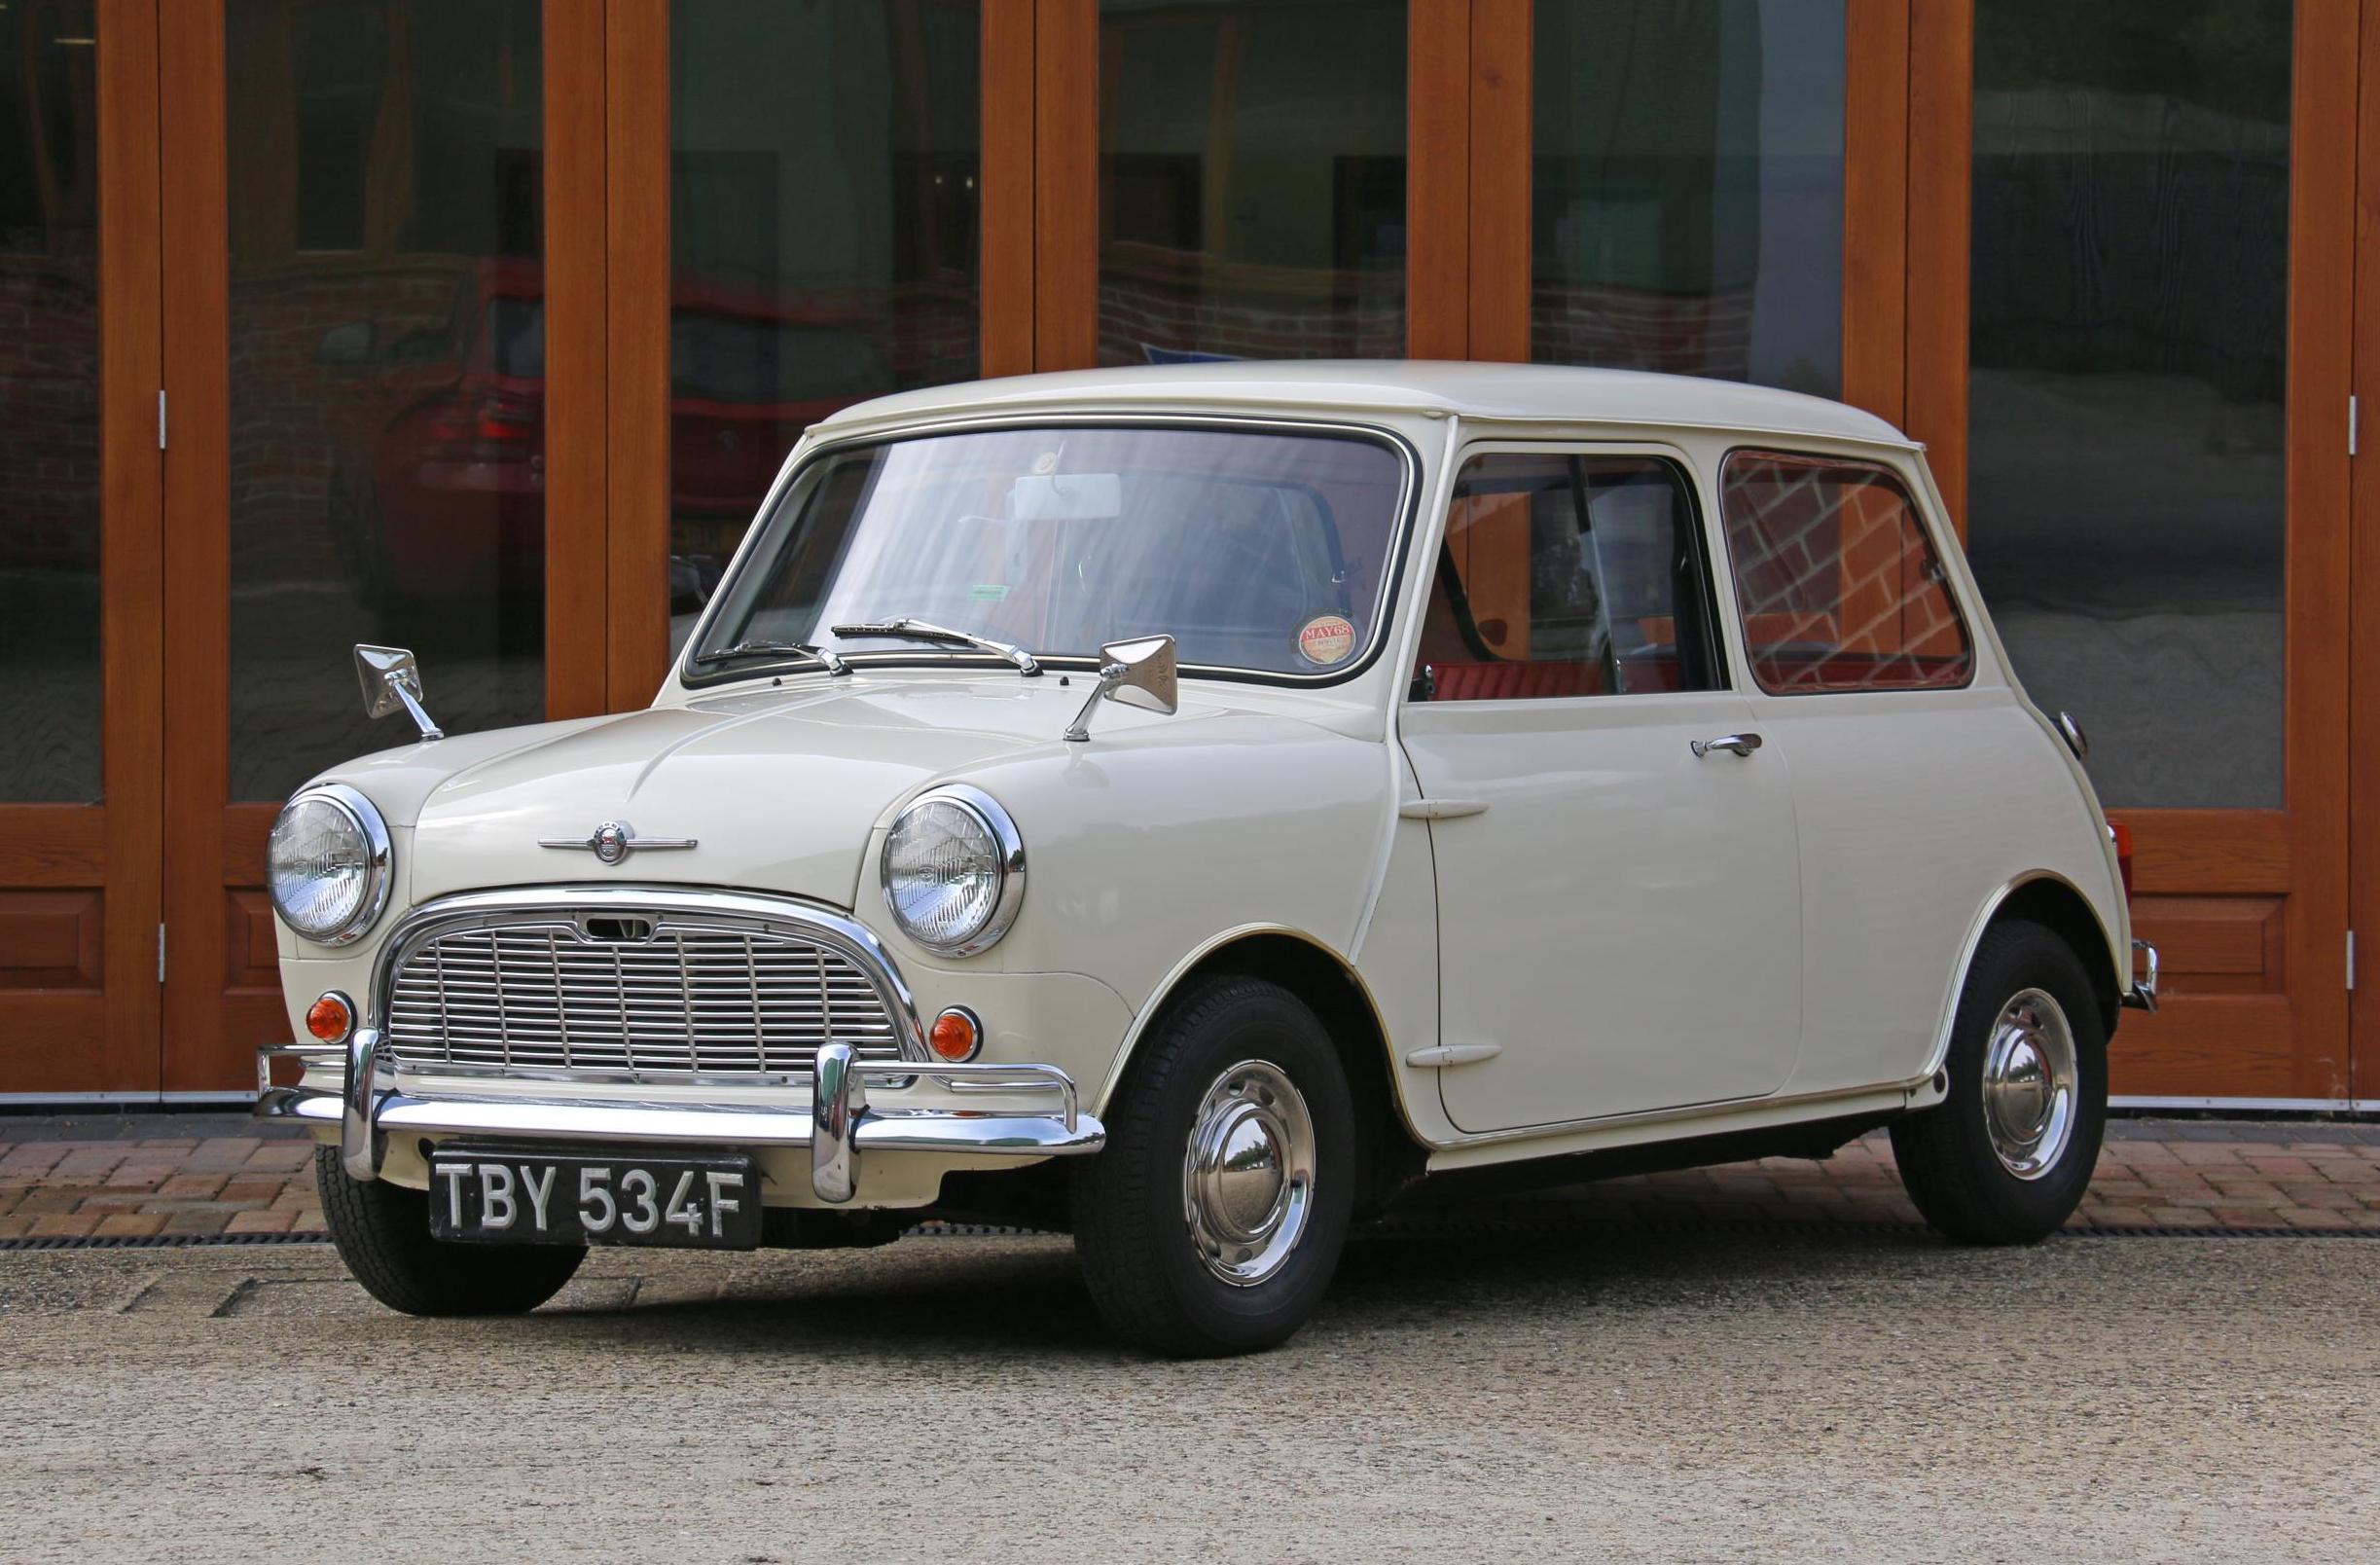 For Sale: 1968 Mini Minor – “world’s most original” example